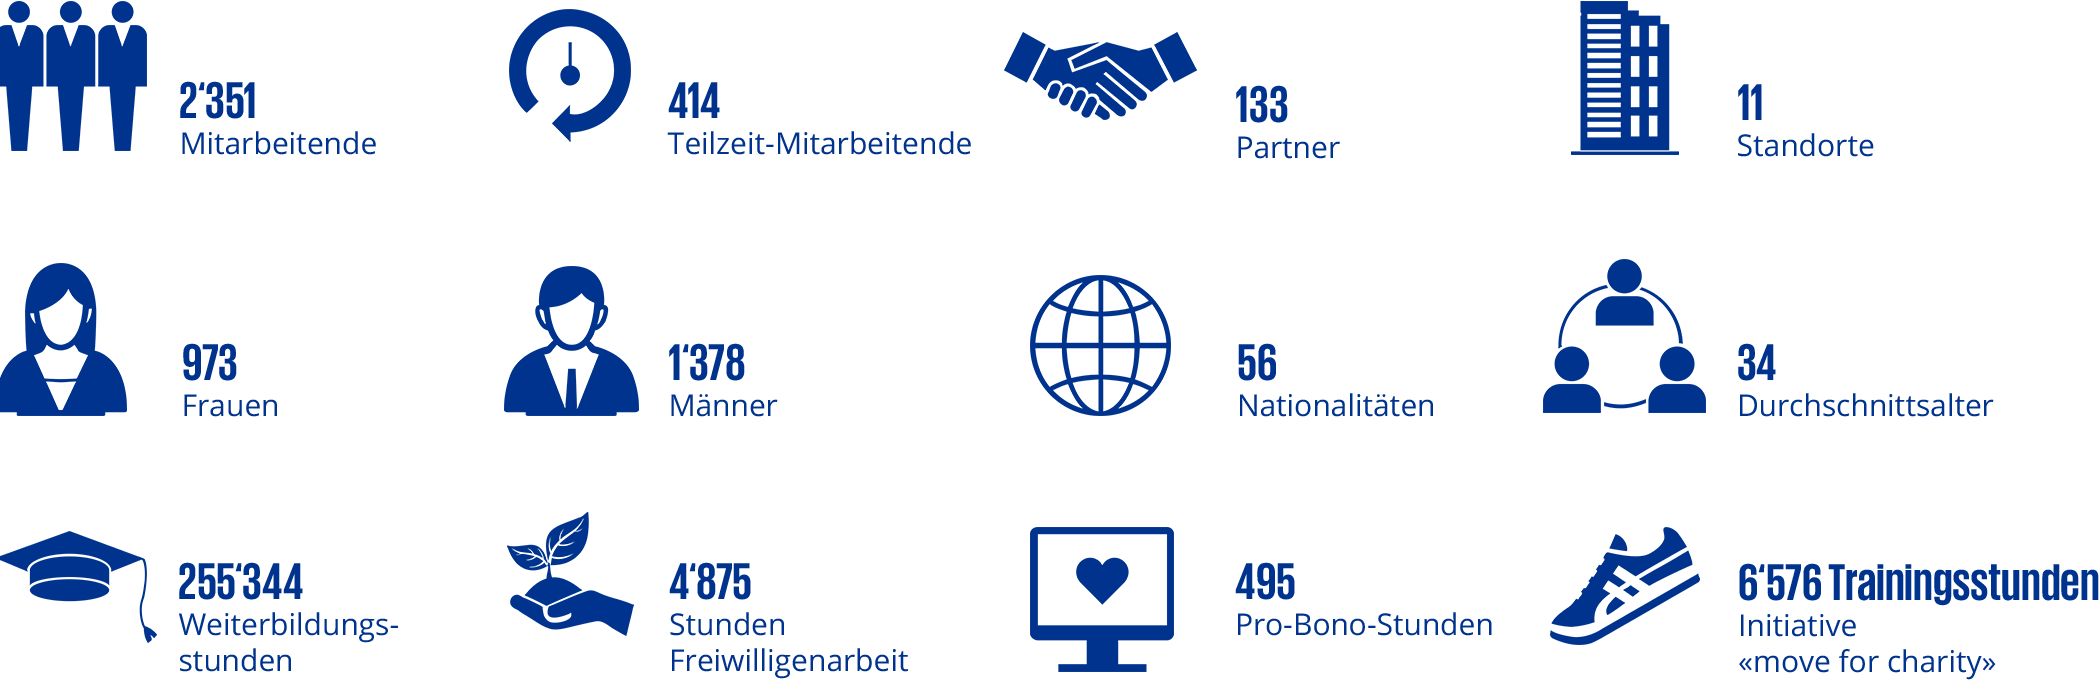 KPMG Schweiz Zahlen & Fakten